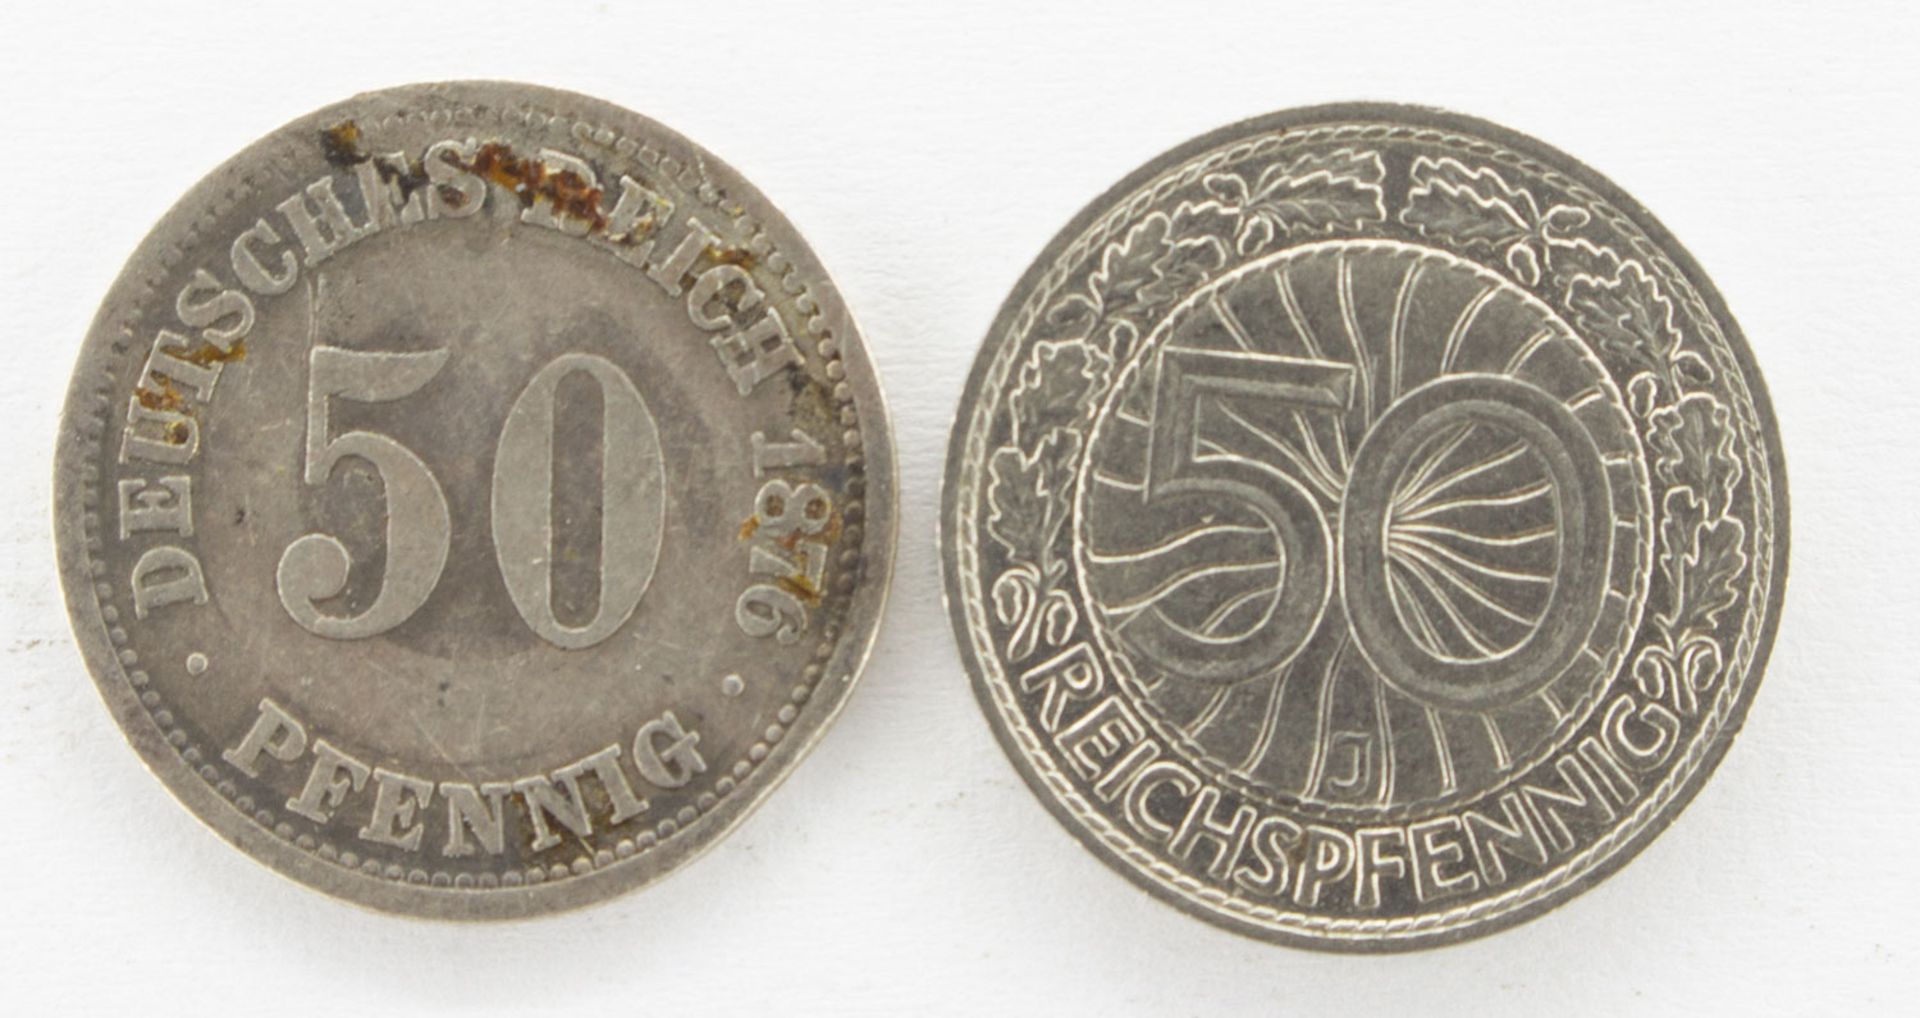 2 x 50 Reichspfennig